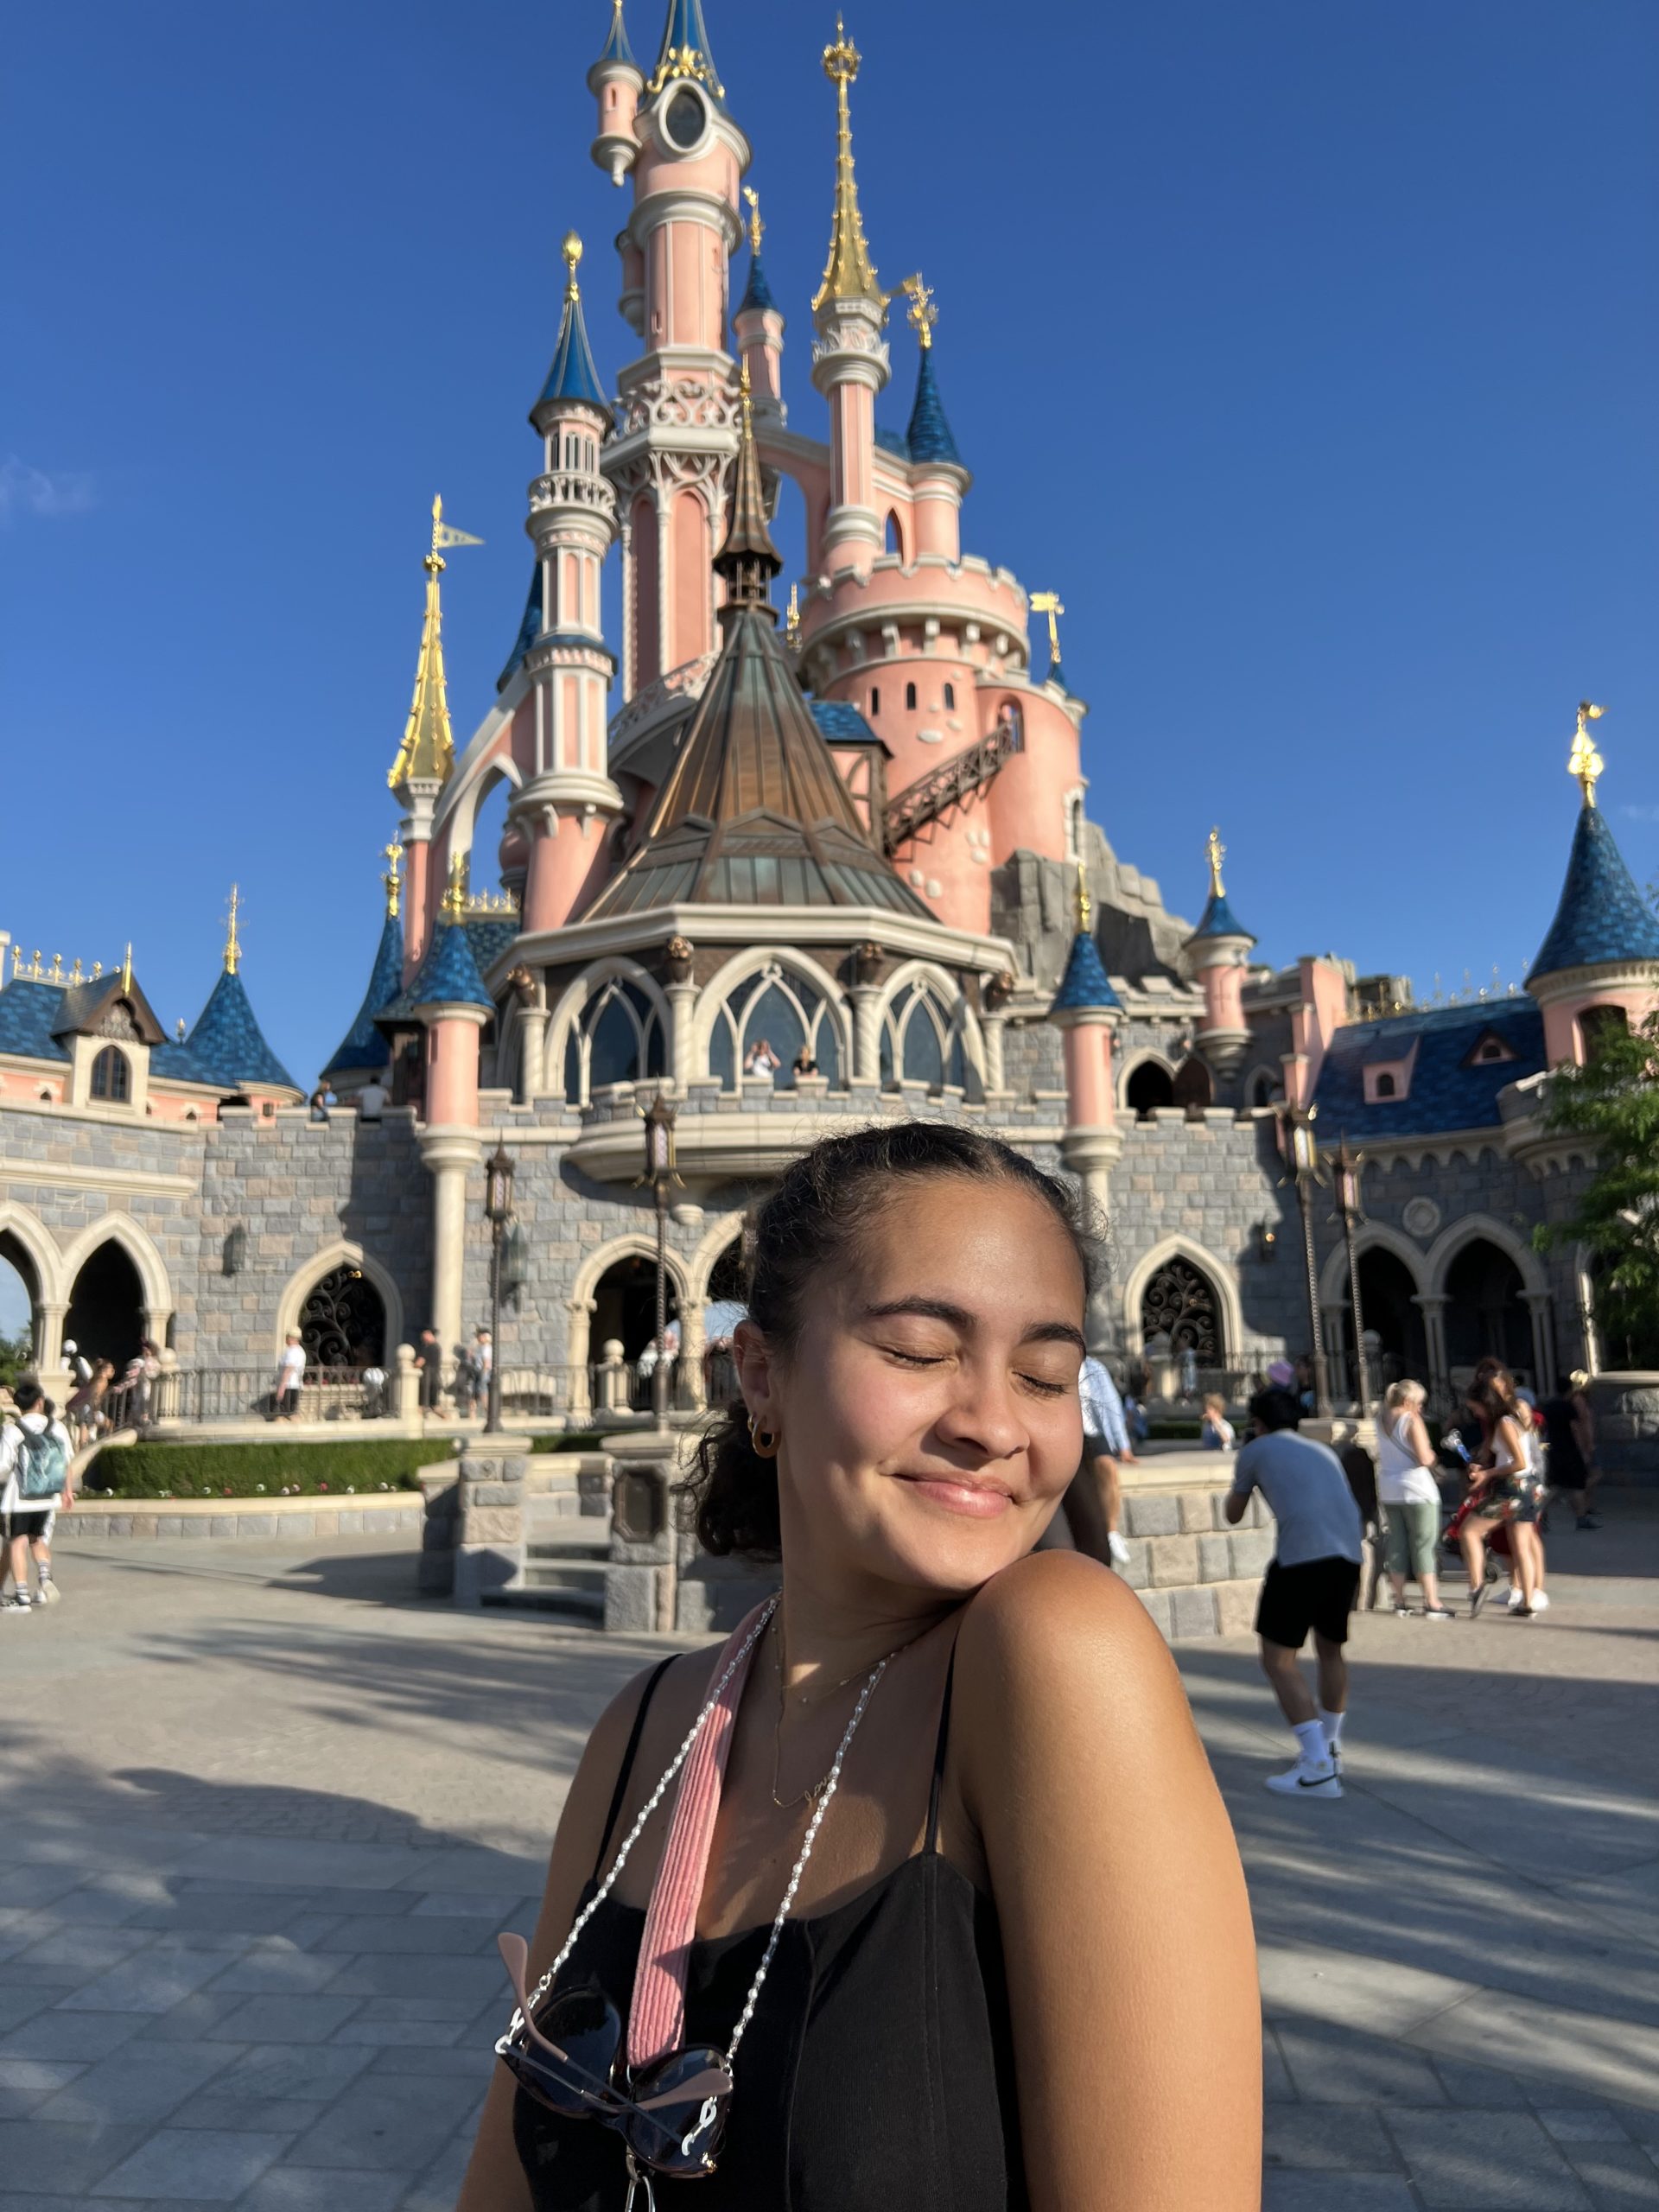 Girl in front of Disneyland Paris castle